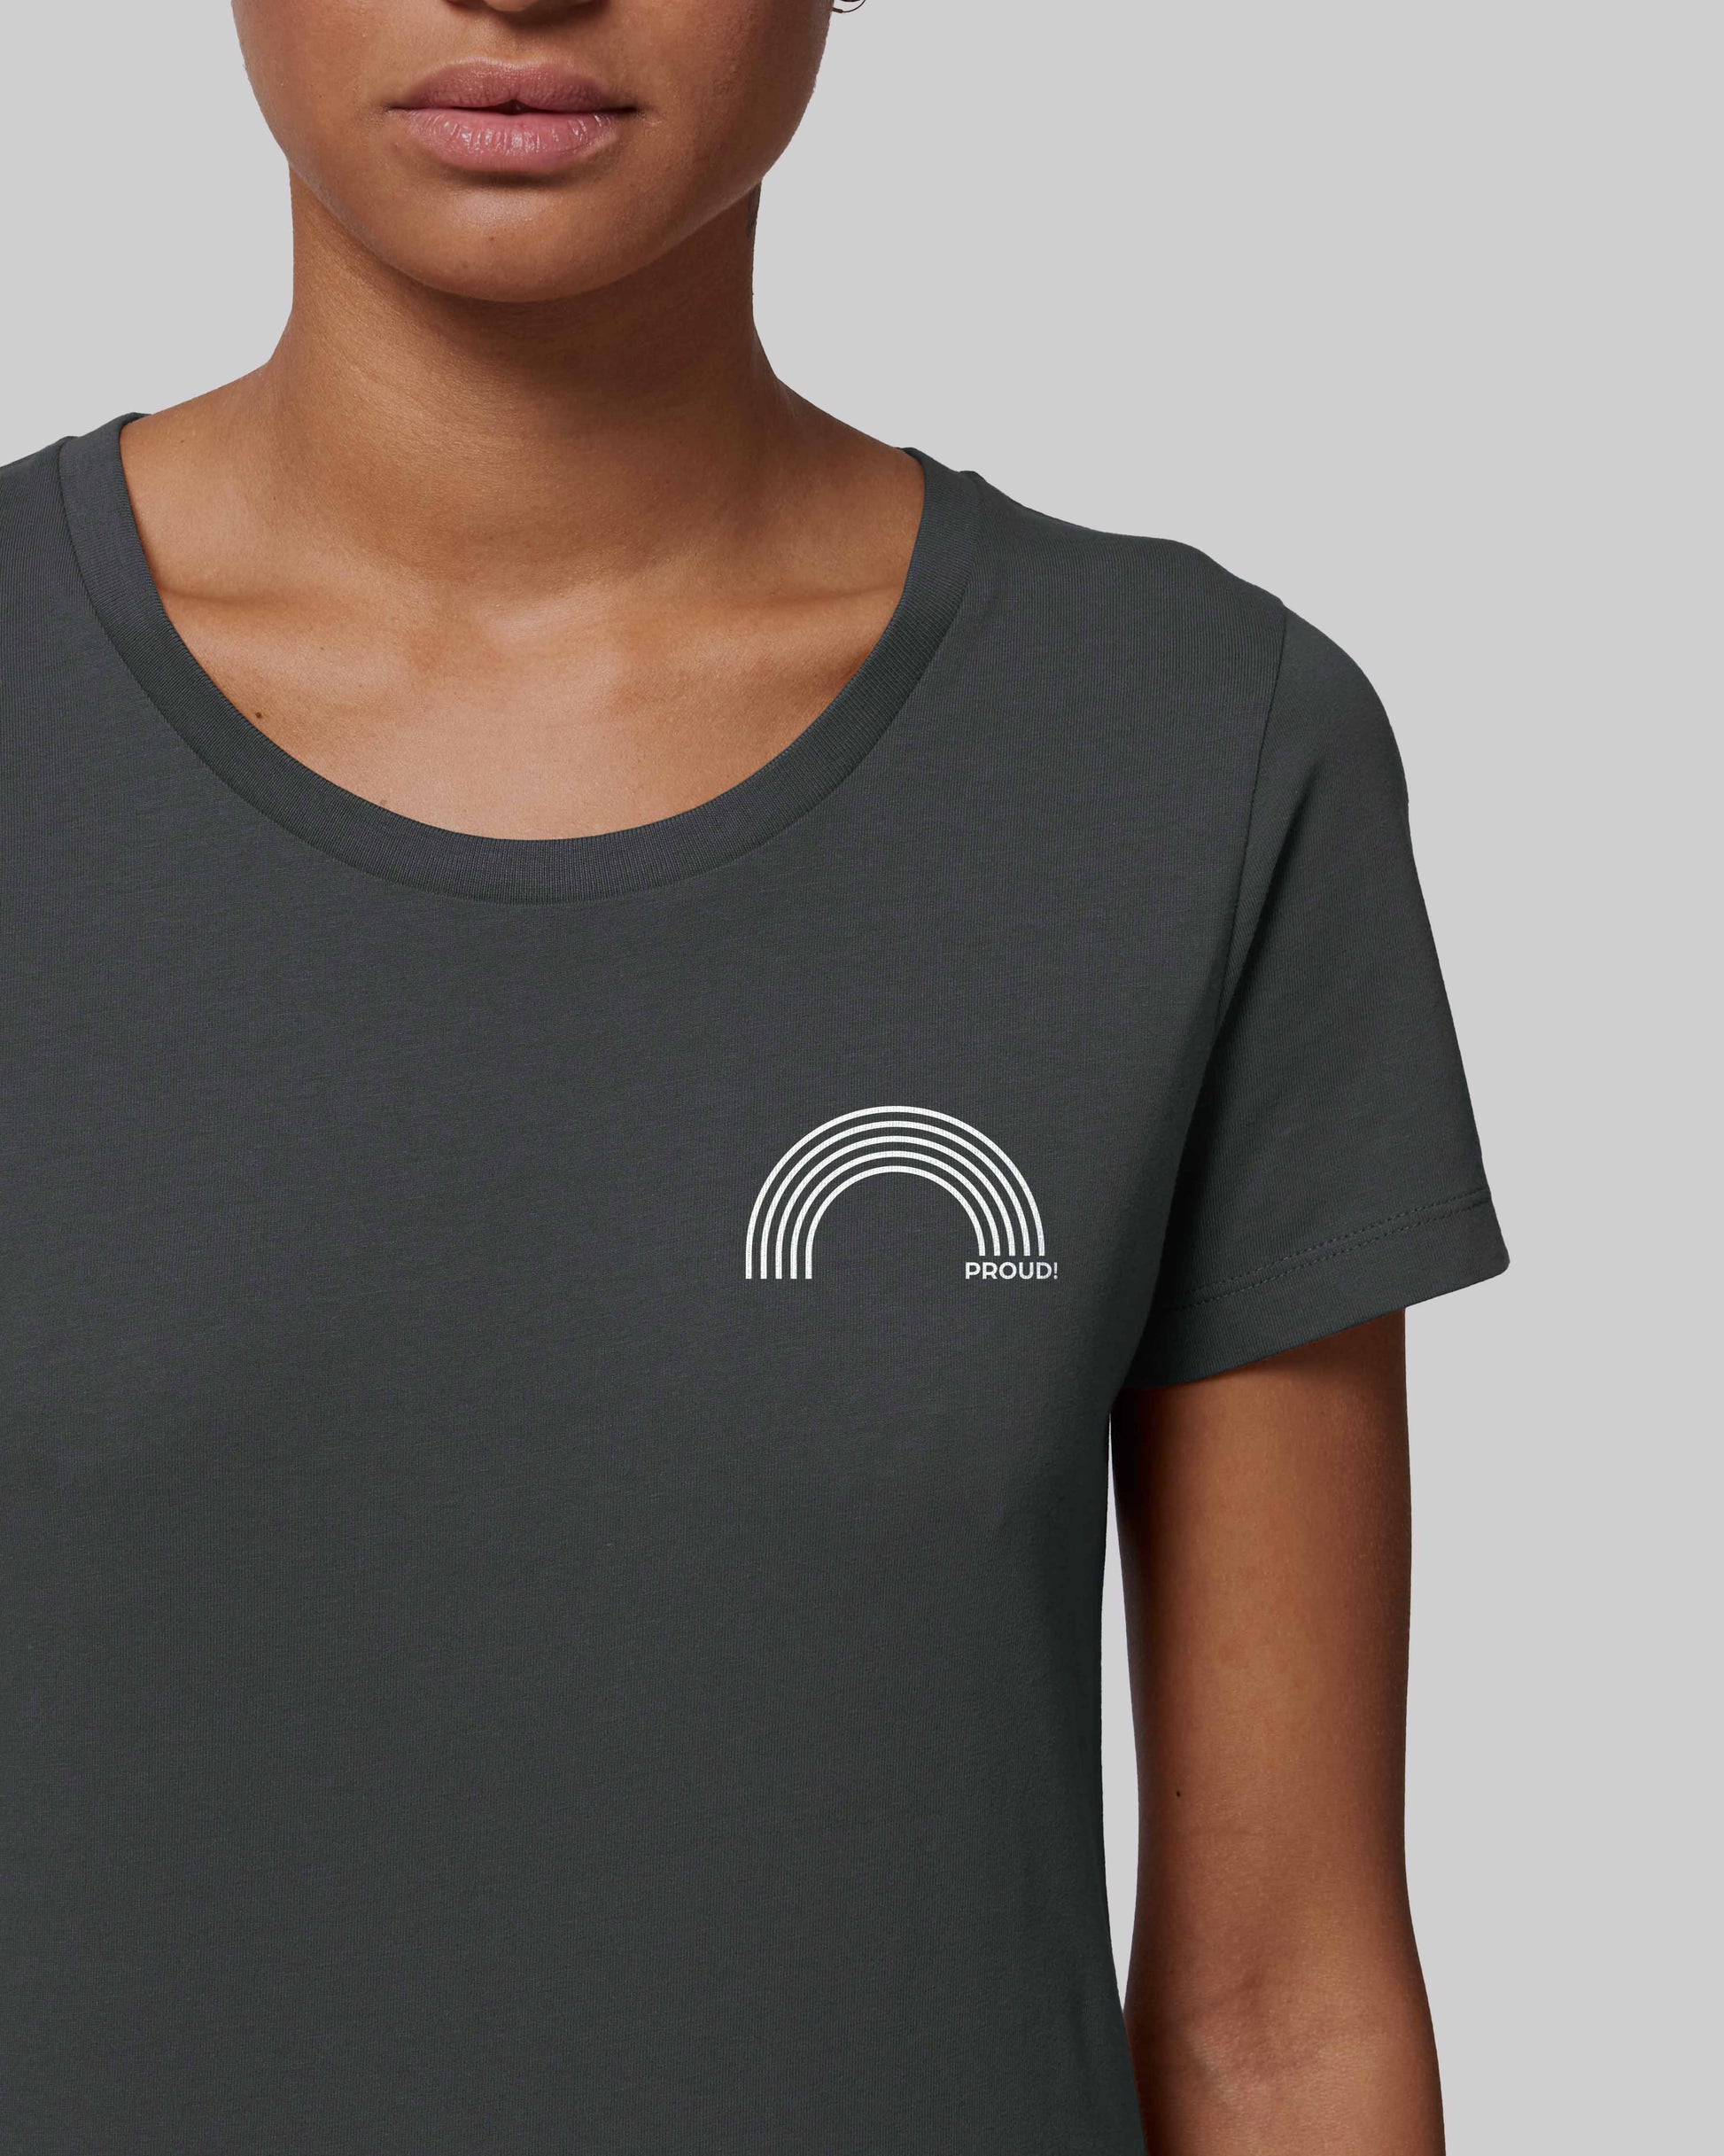 EINHORST® Organic Shirt tailliert in "Anthracite" mit dem Motiv "proud Regenbogen" in der Kombination weißer Regenbogen mit weißer Schrift, Bild von weiblicher Person mit Shirt